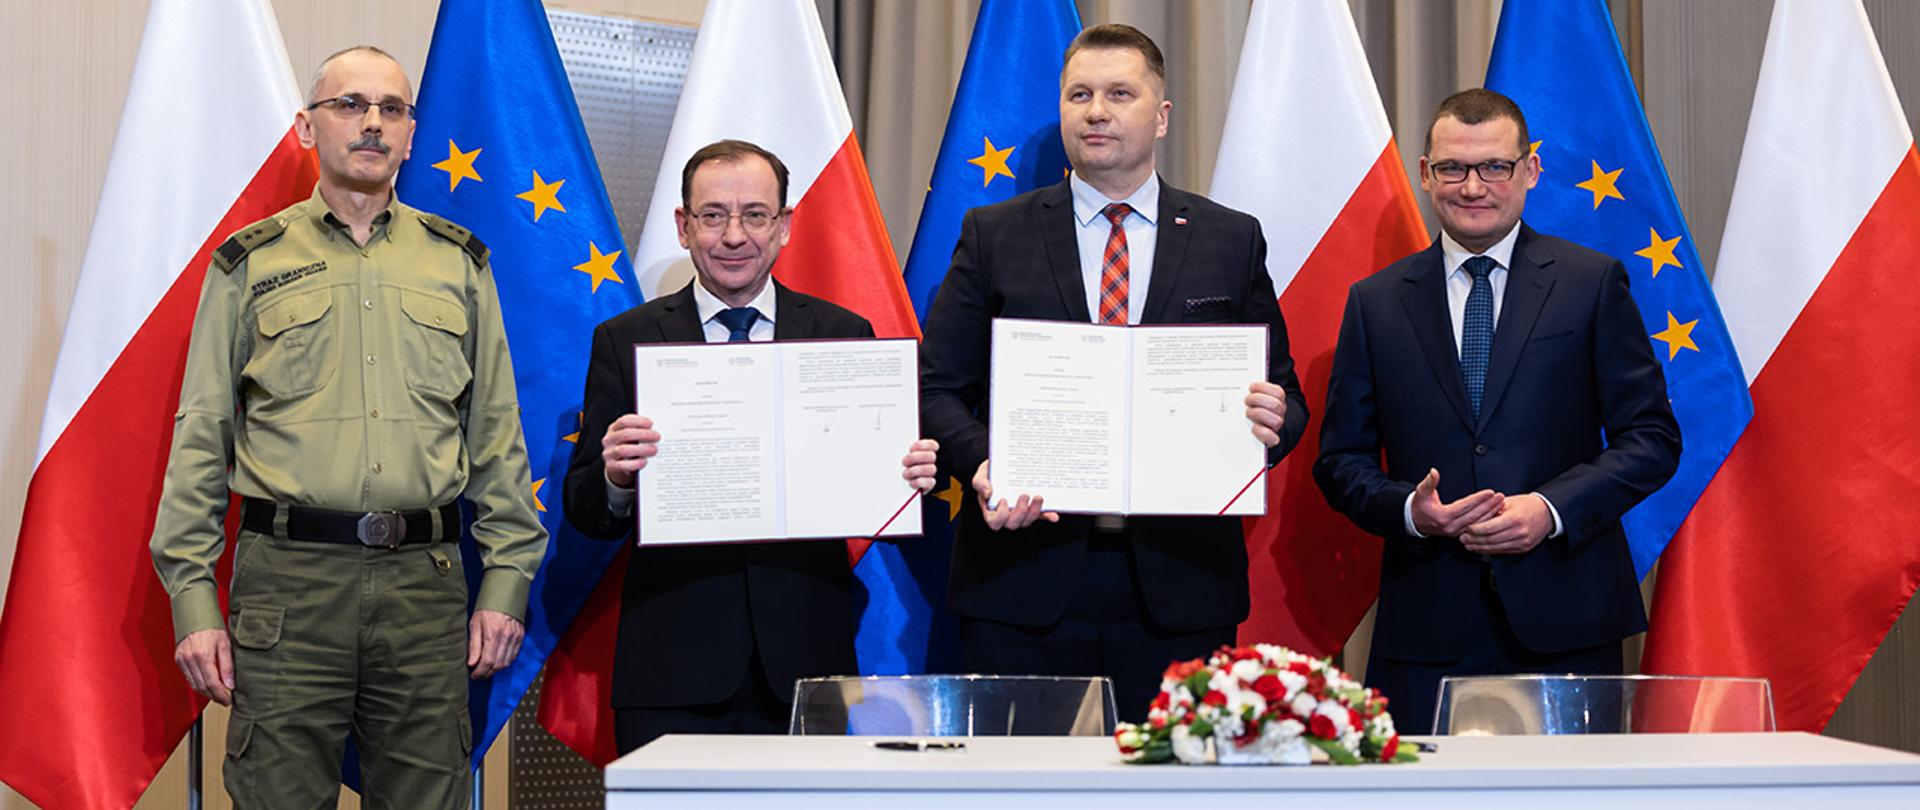 Na zdjęciu uczestnicy konferencji, minister Mariusz Kamiński i minister Przemysław Czarnek trzymają podpisany list intencyjny.